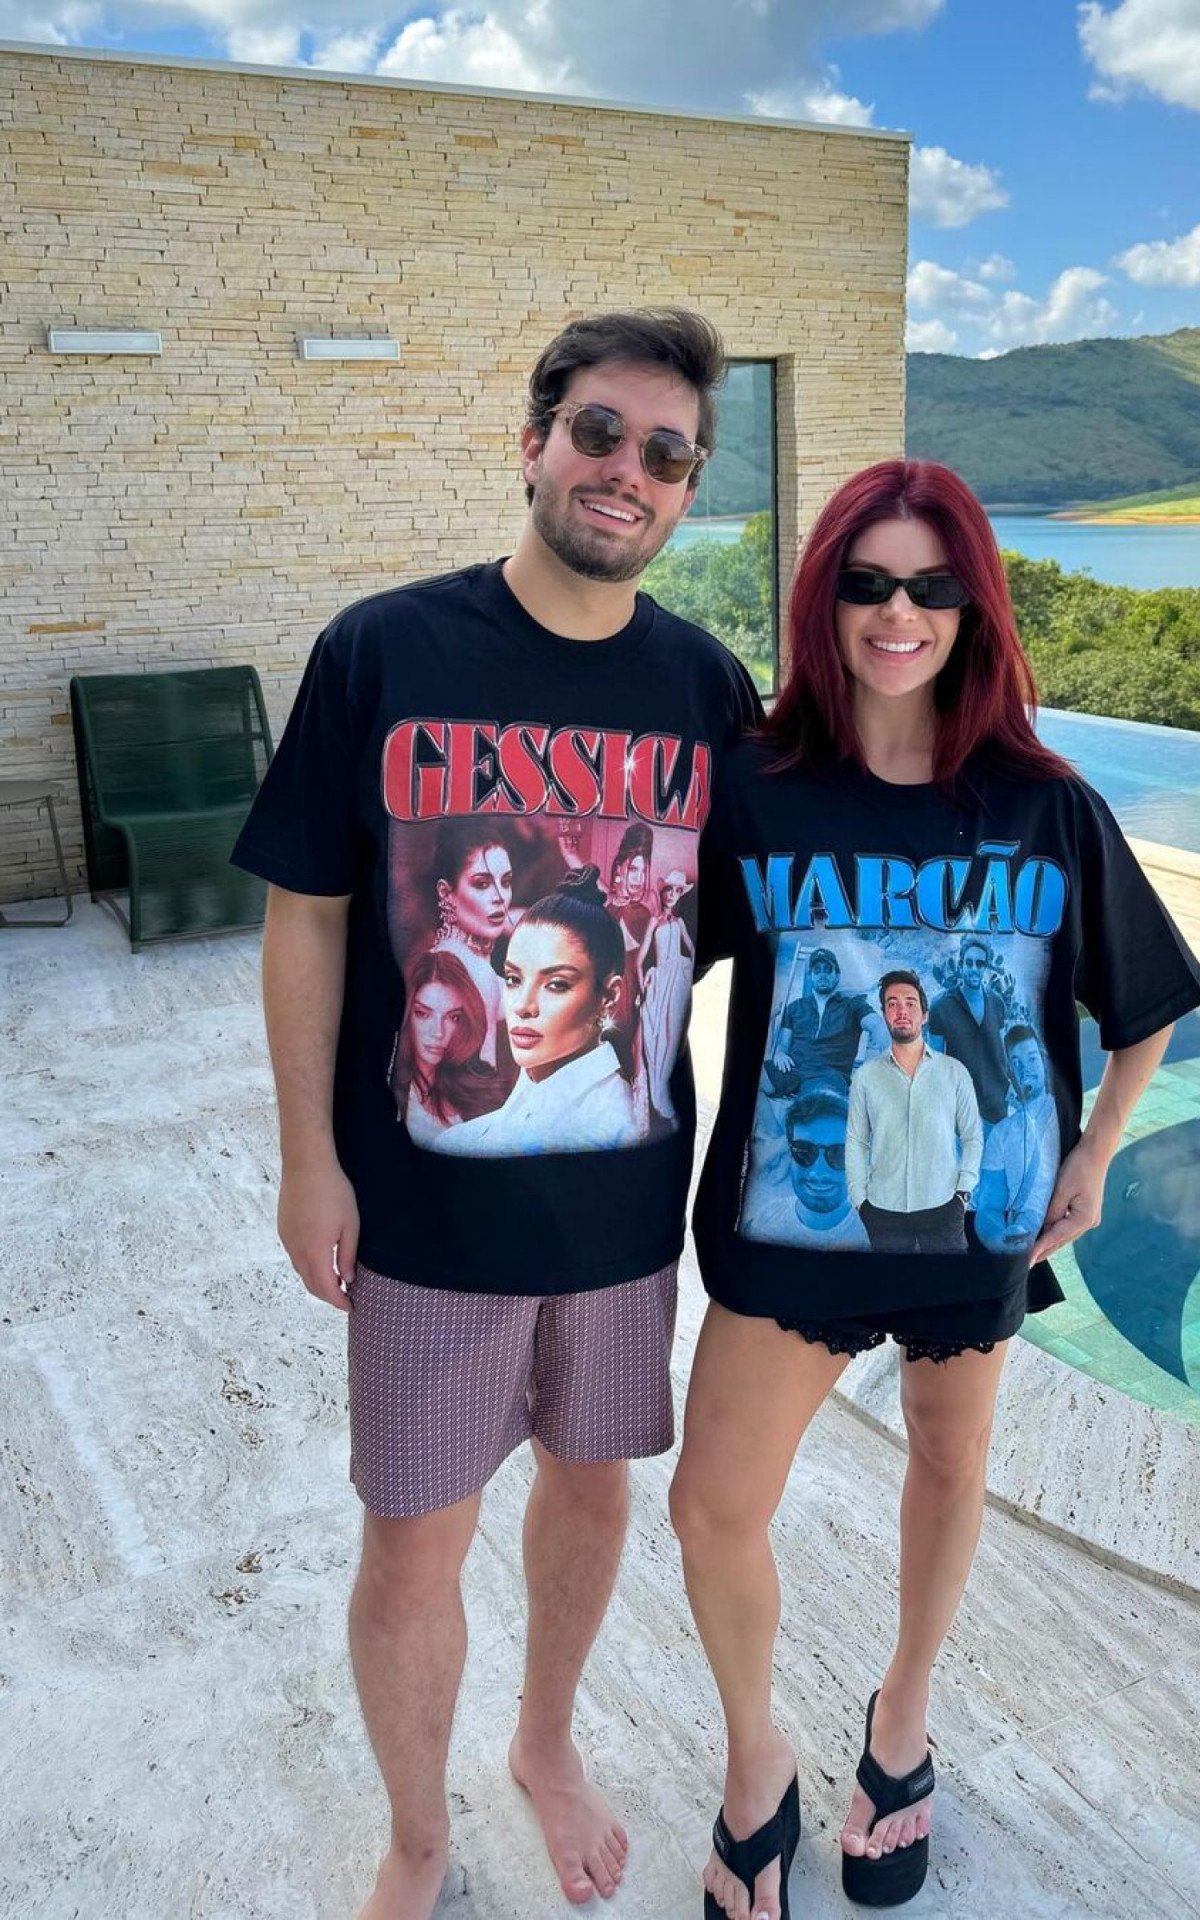 Gkay e namorado usam camisas com a foto um do outro e divertem seguidores | Celebridades